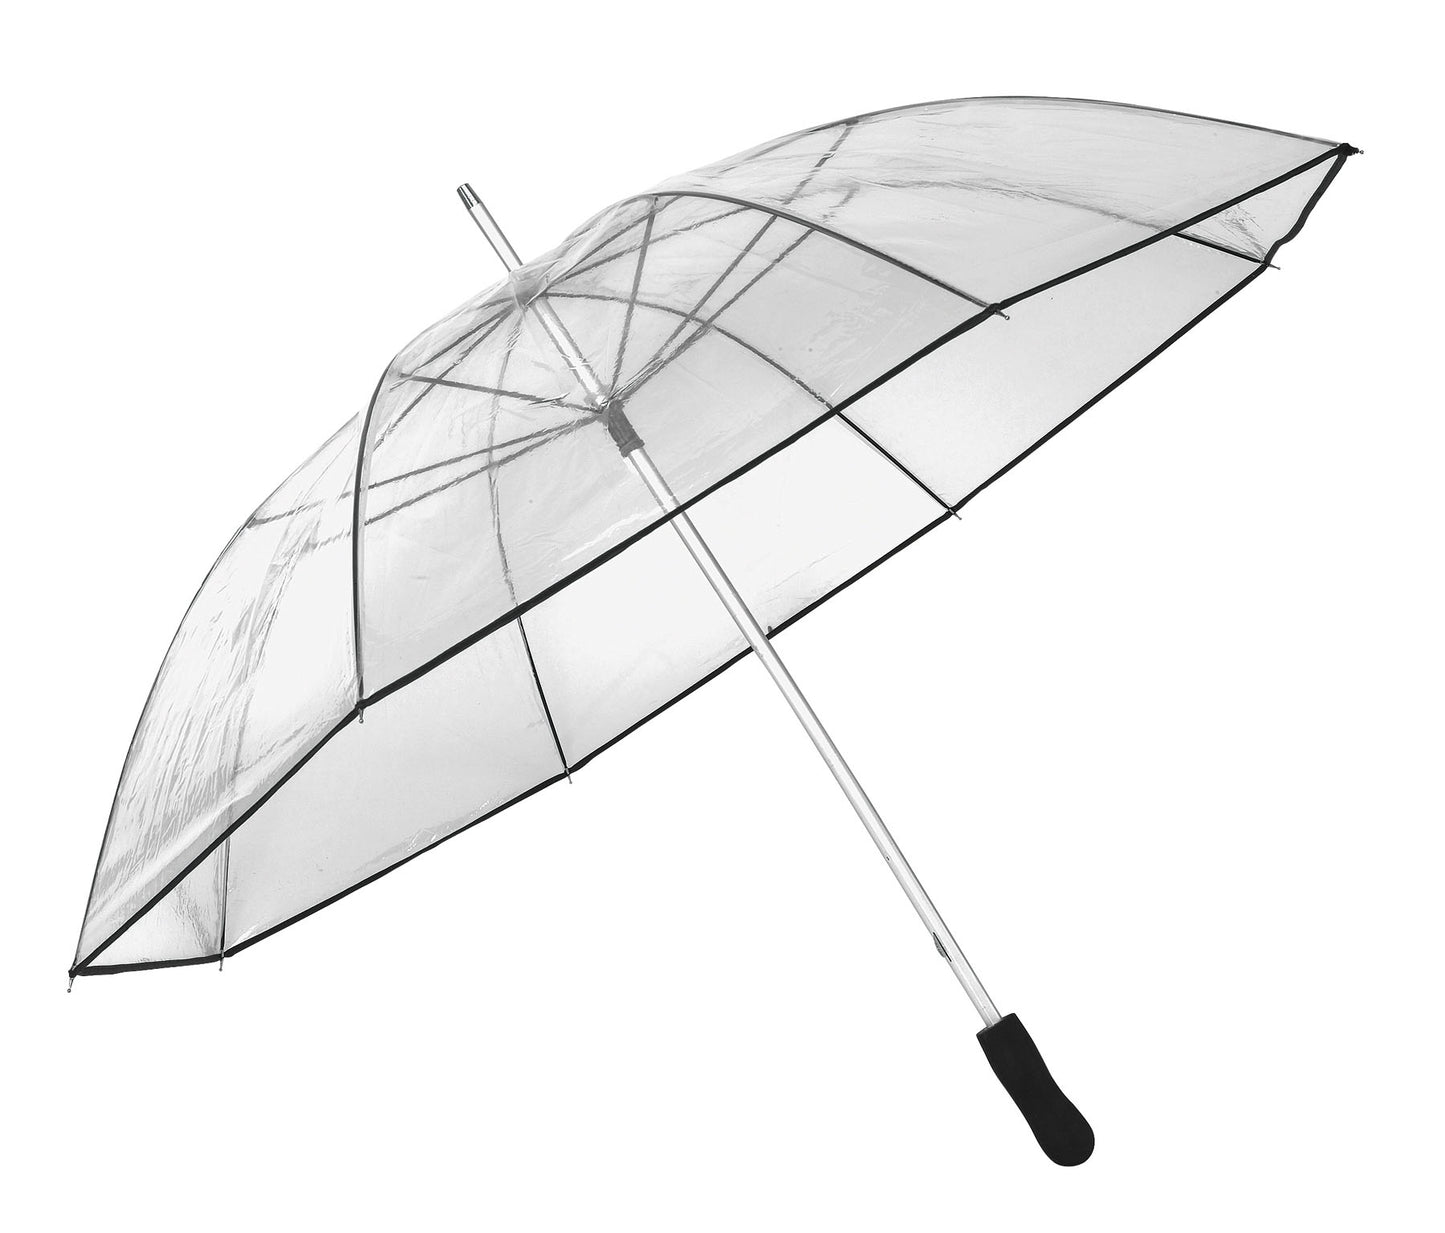 Διαφανής ομπρέλα PVC, μεγάλης διαμέτρου.